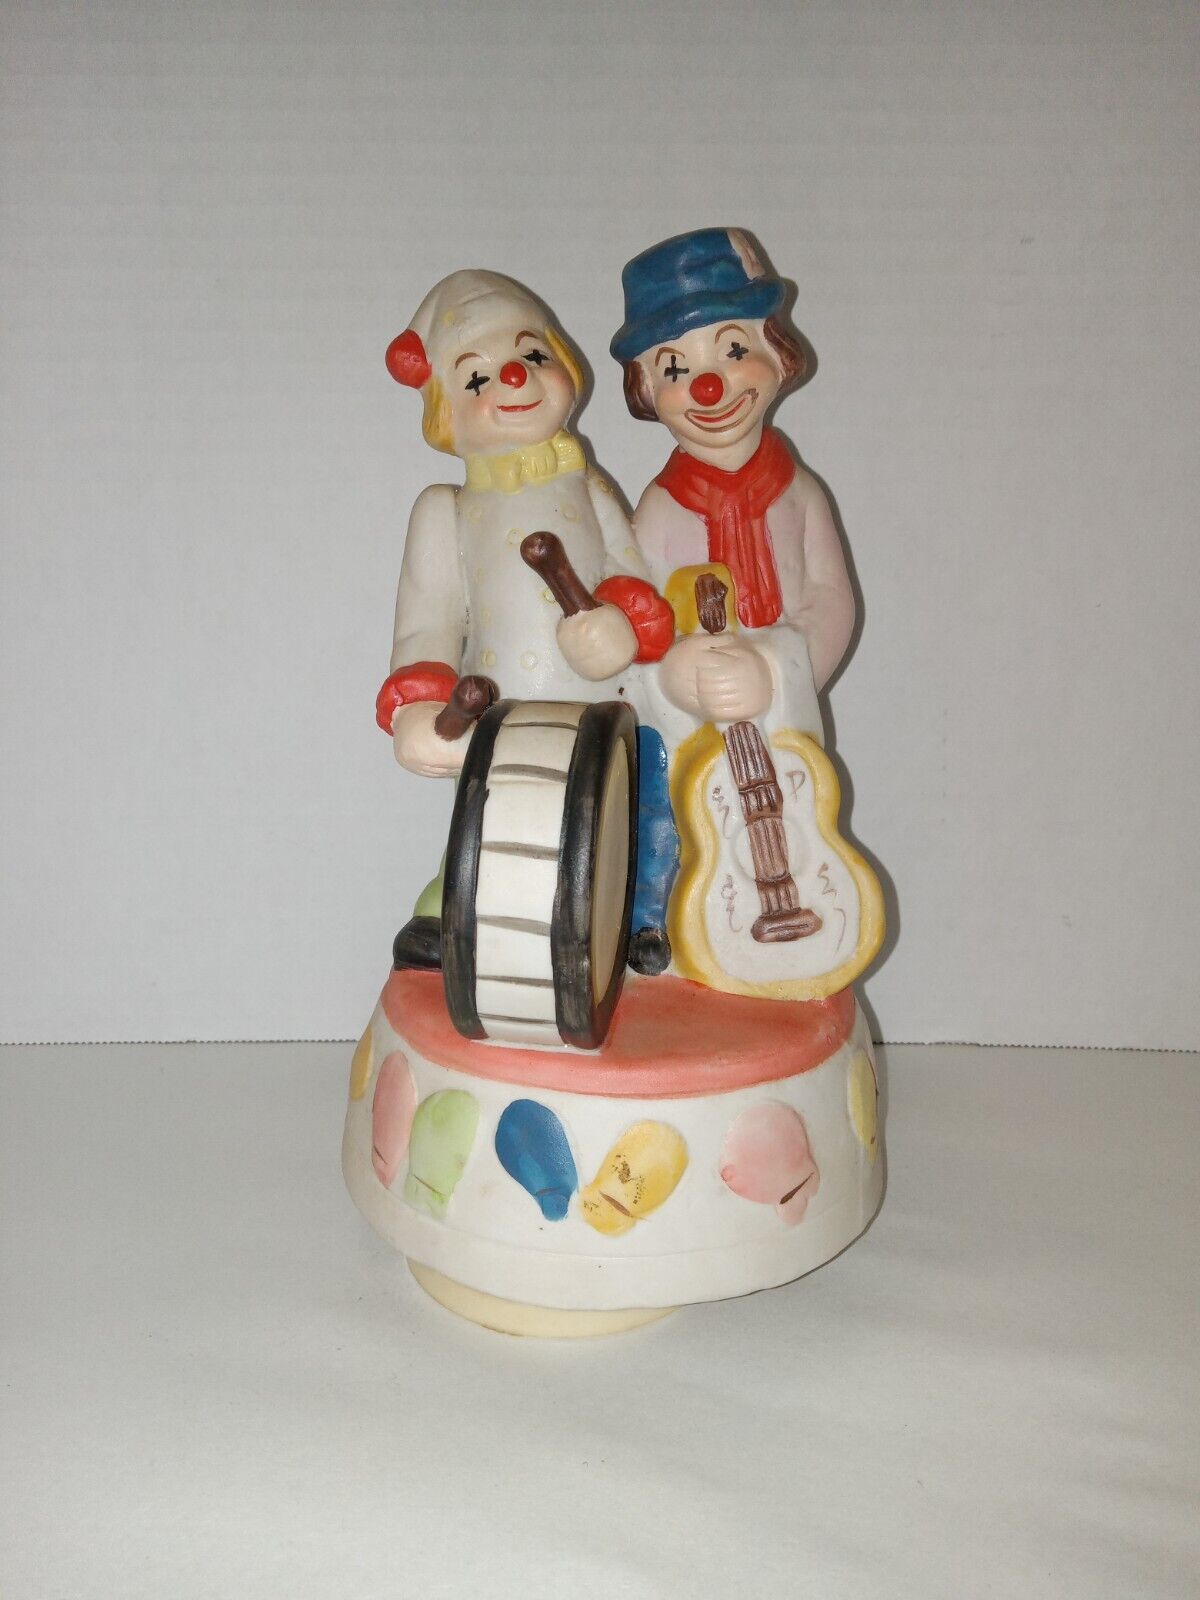 Vintage Porcelain Clowns Wind Up Music Box W/ Guitar & Drums 9